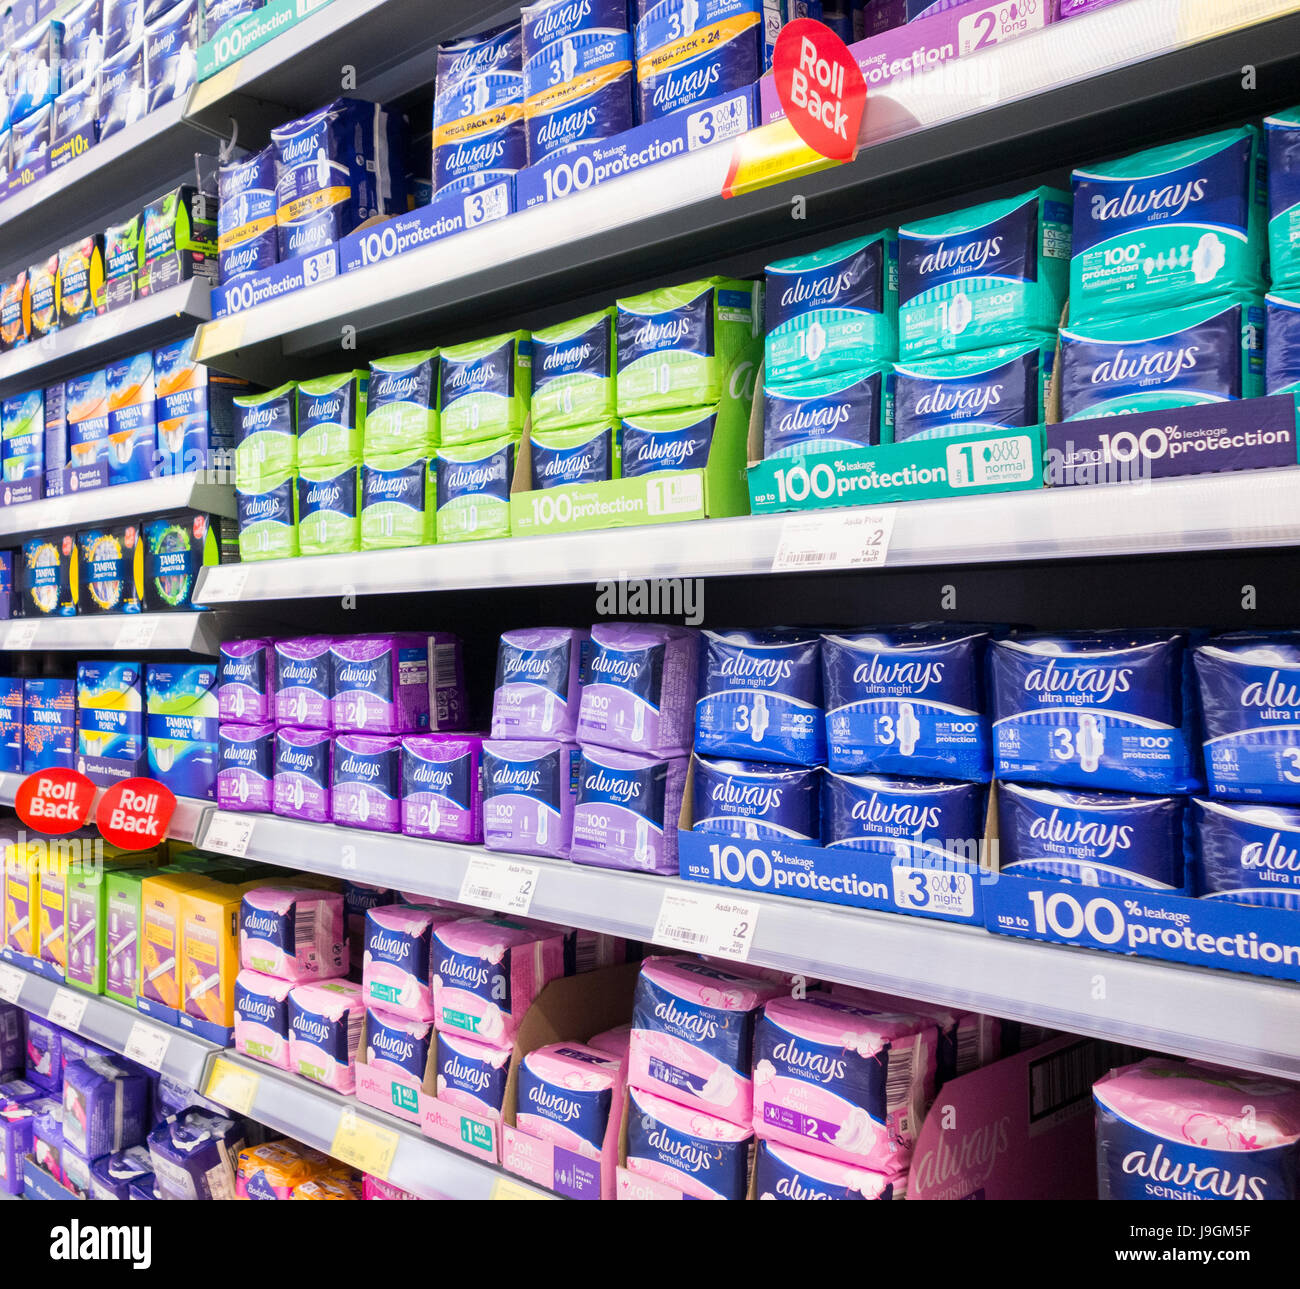 Supermarkt-Anzeige der Tampax Tampons, feminine Produkte. UK Stockfoto